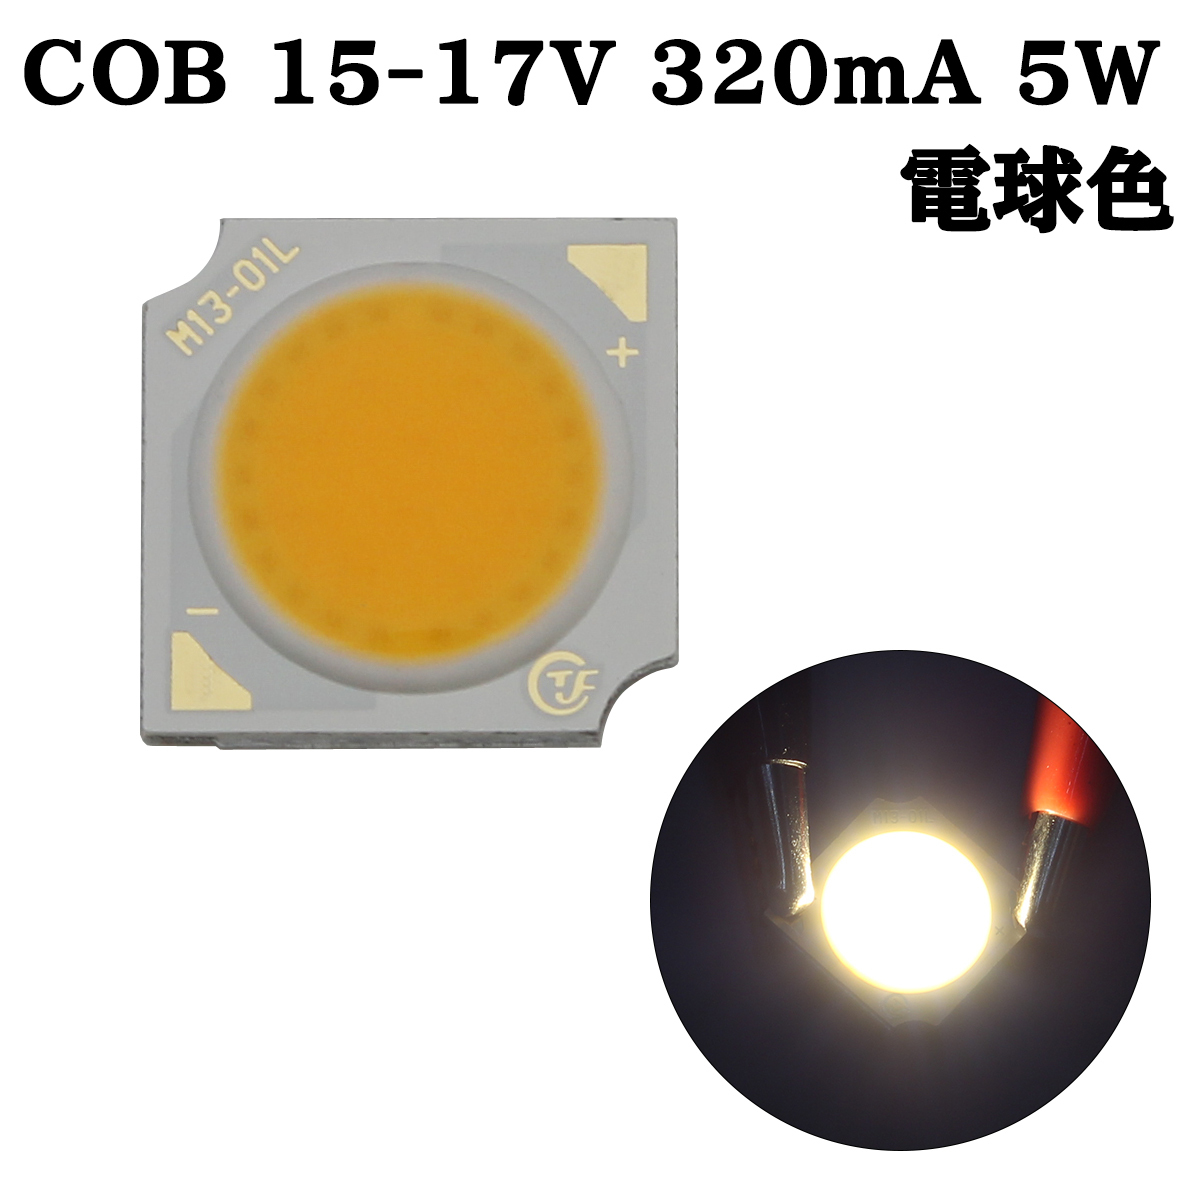 COB LED チップオンボード 面発光 広範囲照射 15-17V 320mA 5W 3000-3200K 110-120lm 80Ra 1313 電球色_画像1